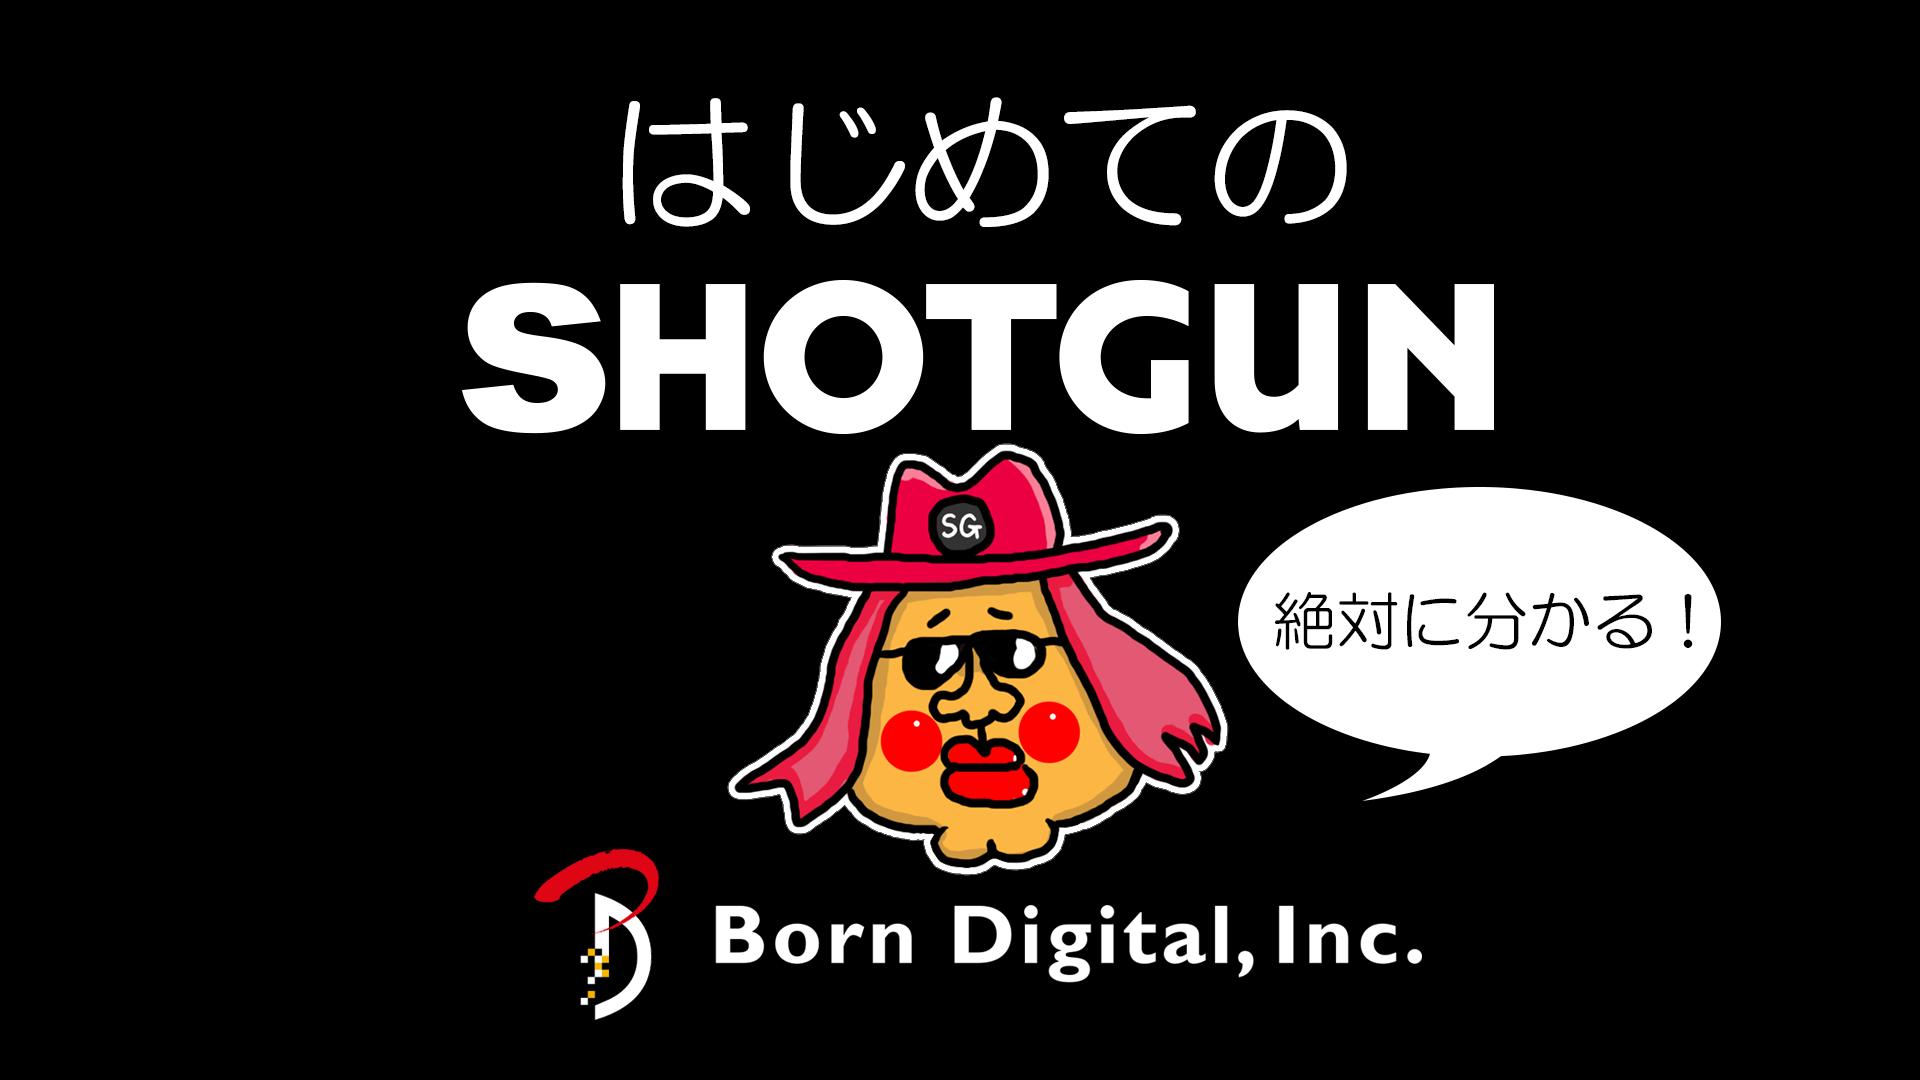 _____Shotgun.png